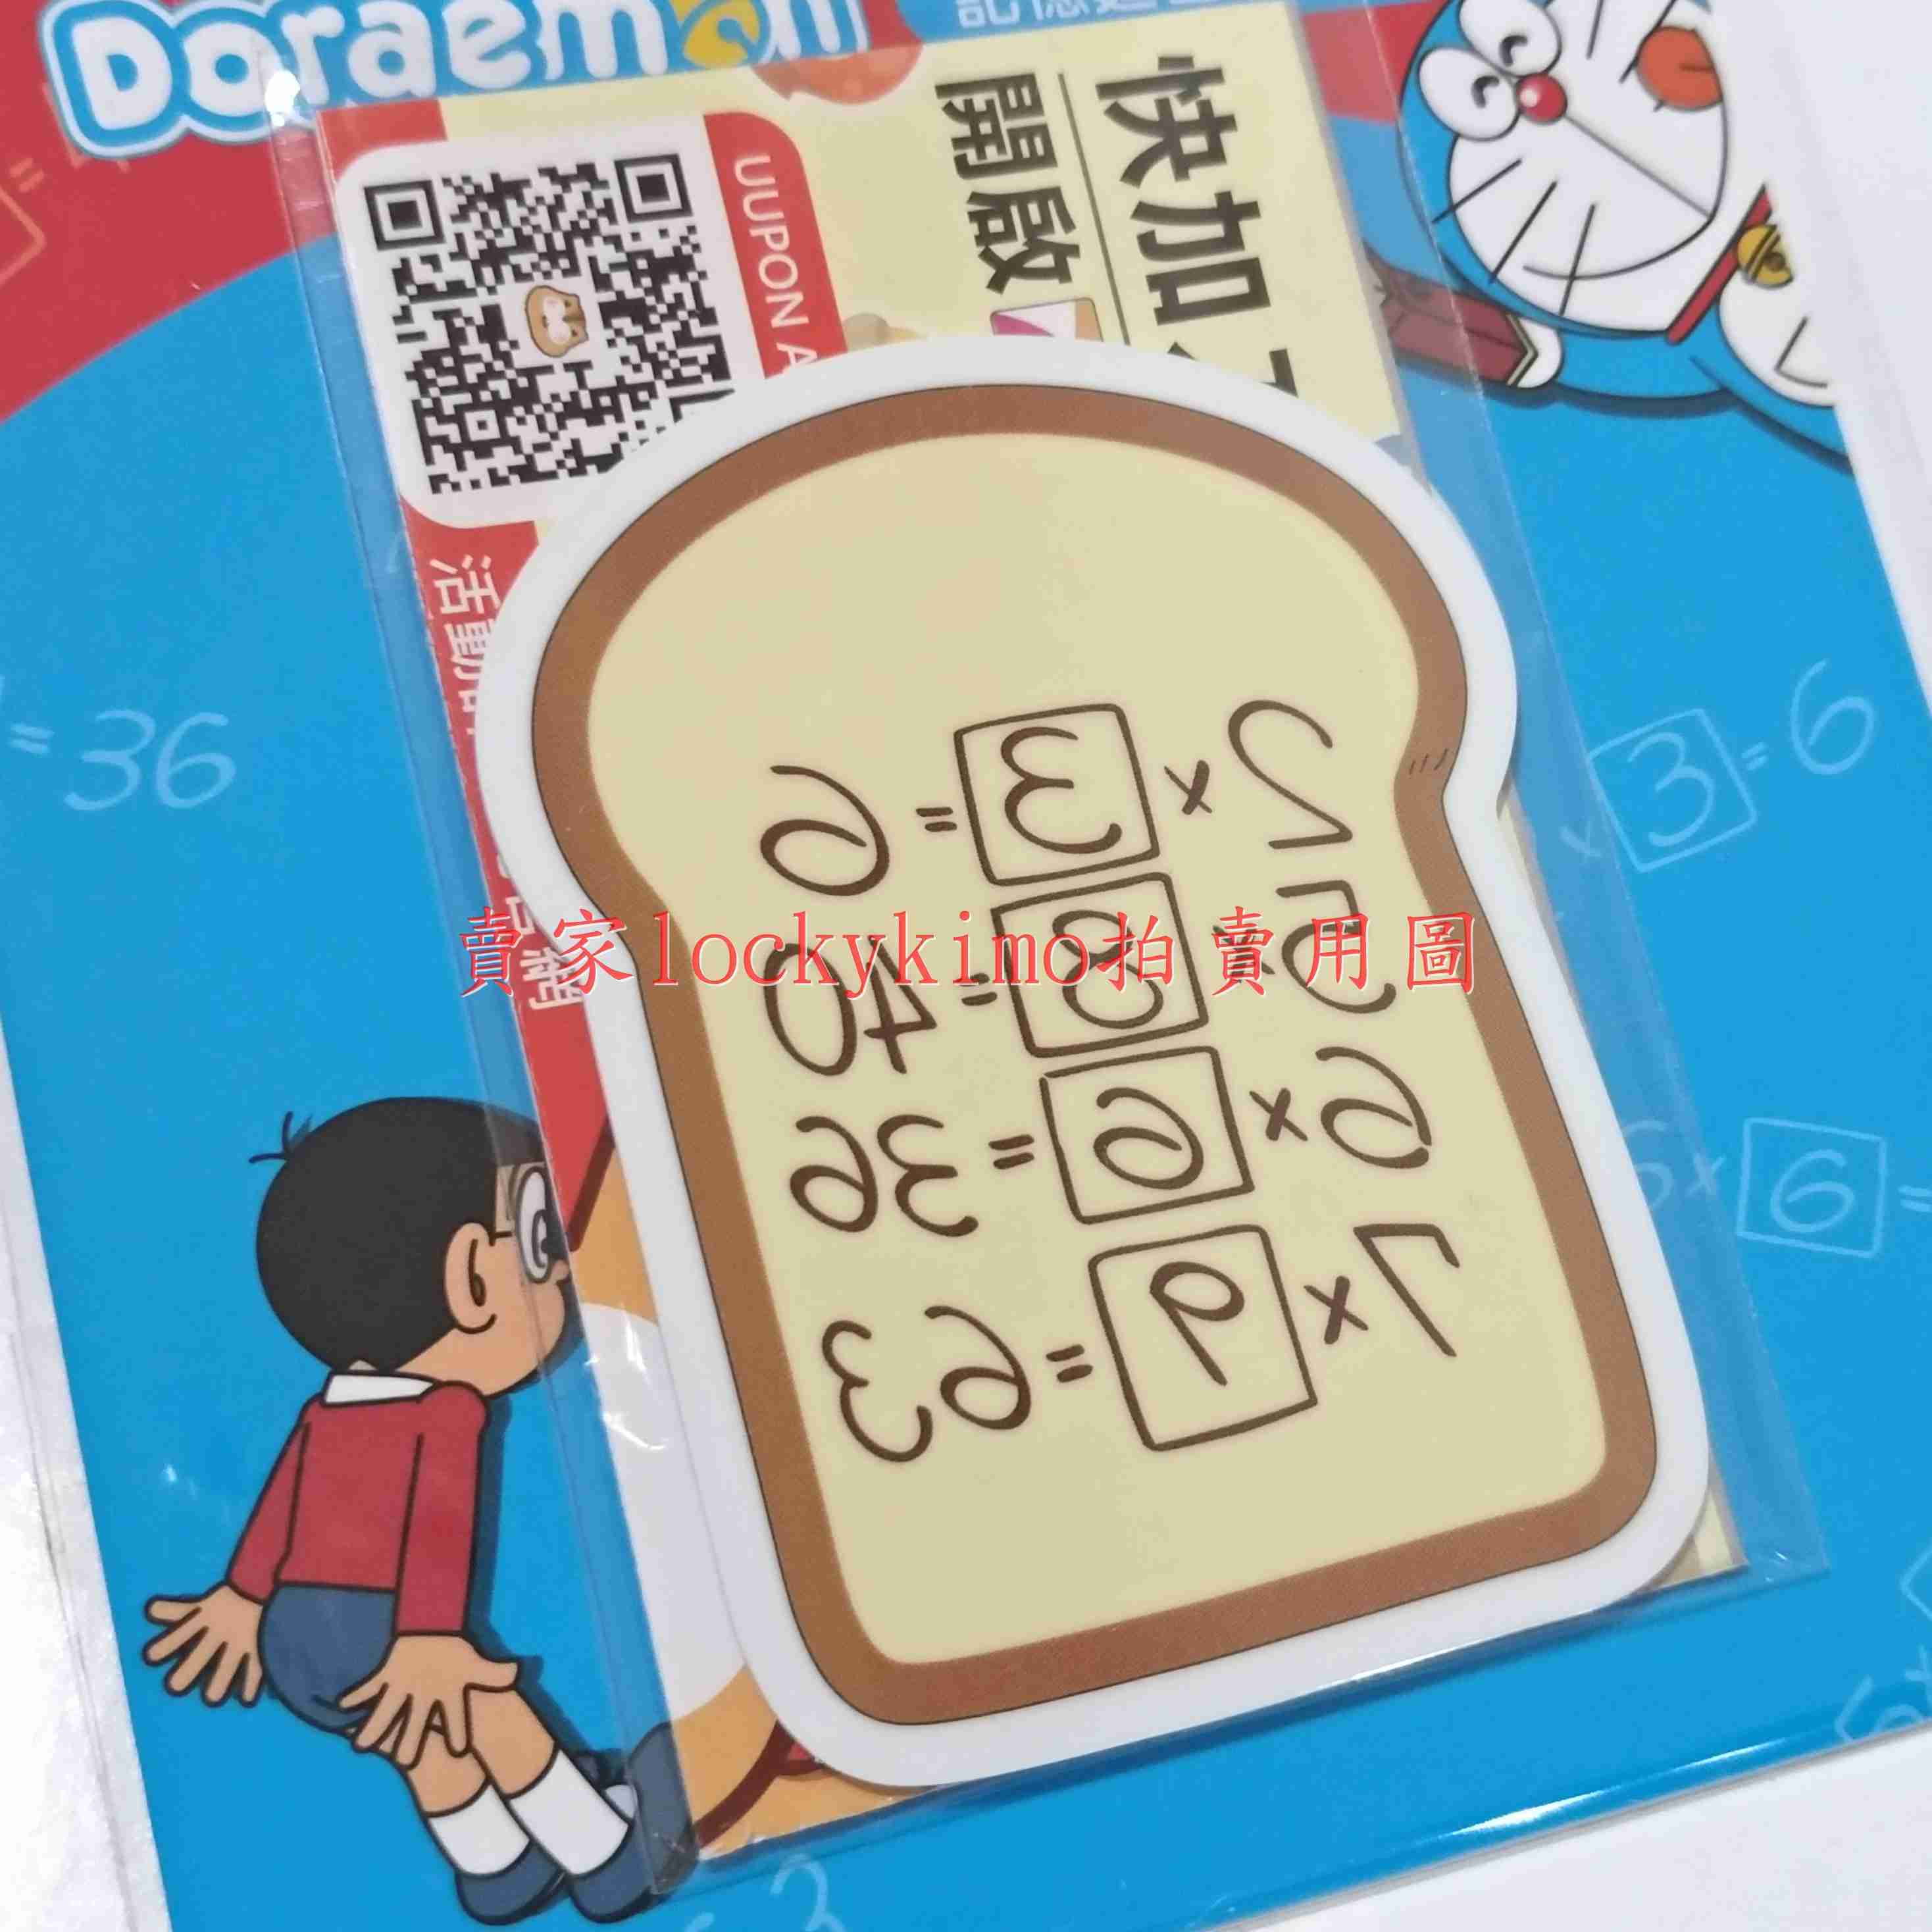 【哆啦A夢 悠遊卡 記憶麵包 任意門 吐司】收藏卡 Doraemon 珍藏卡 哆啦a夢 機器貓 小叮噹 多啦A夢 超能貓